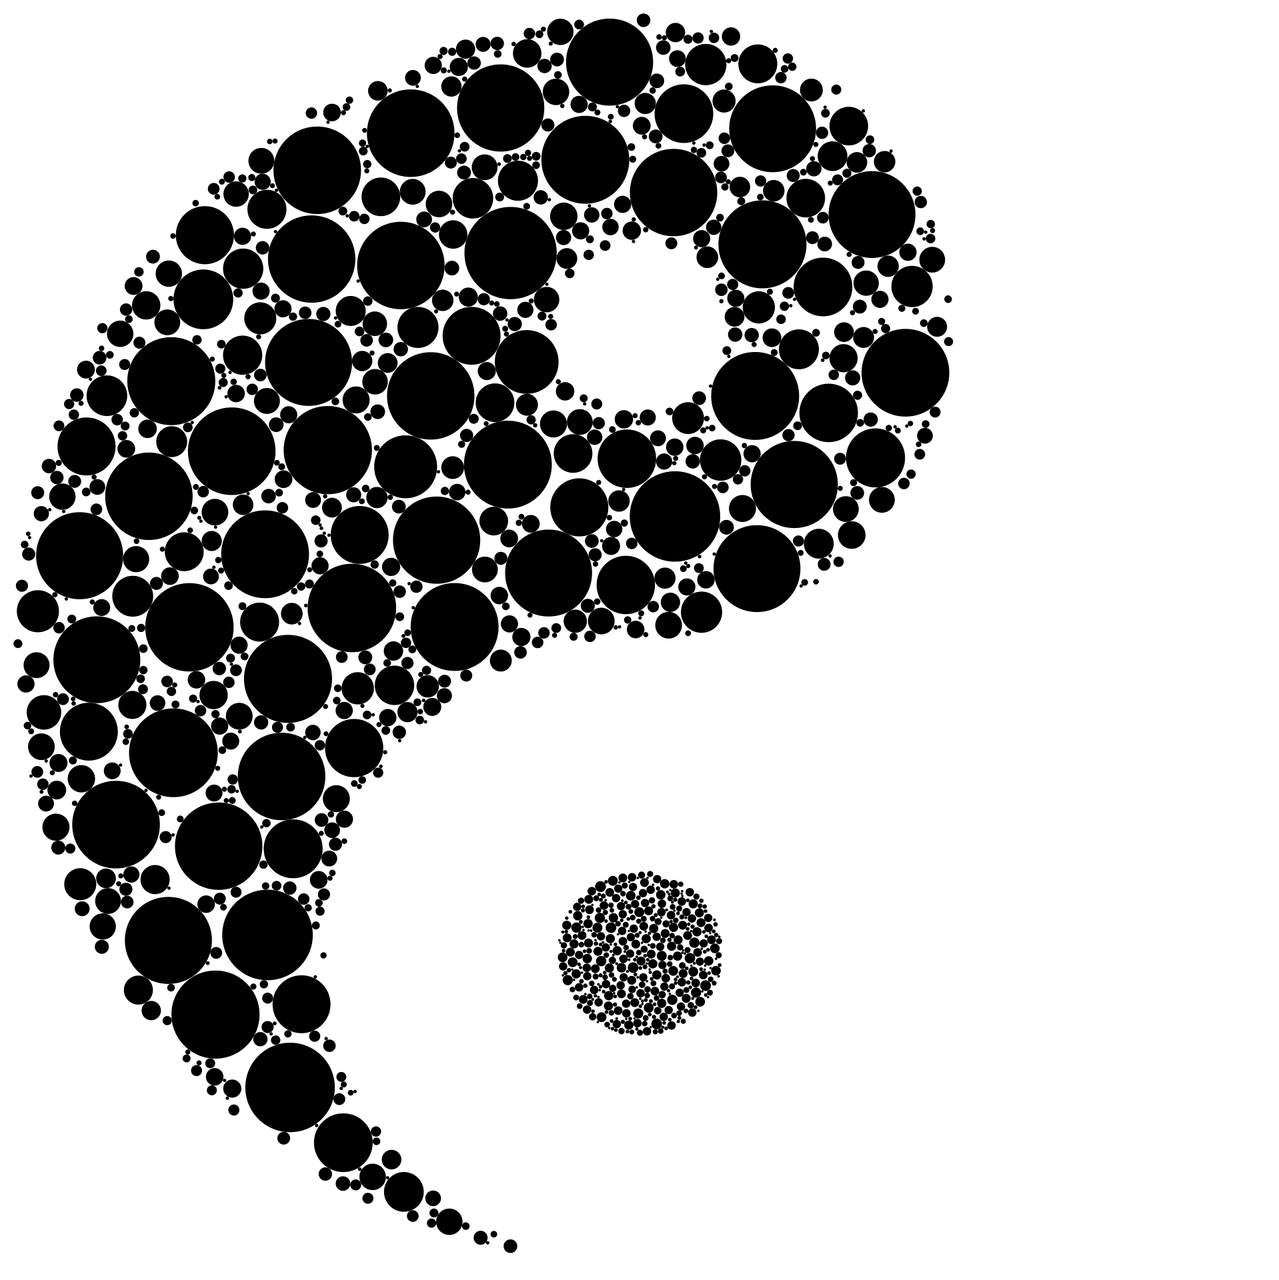 A Yin Yang Symbol Made Of White Circles